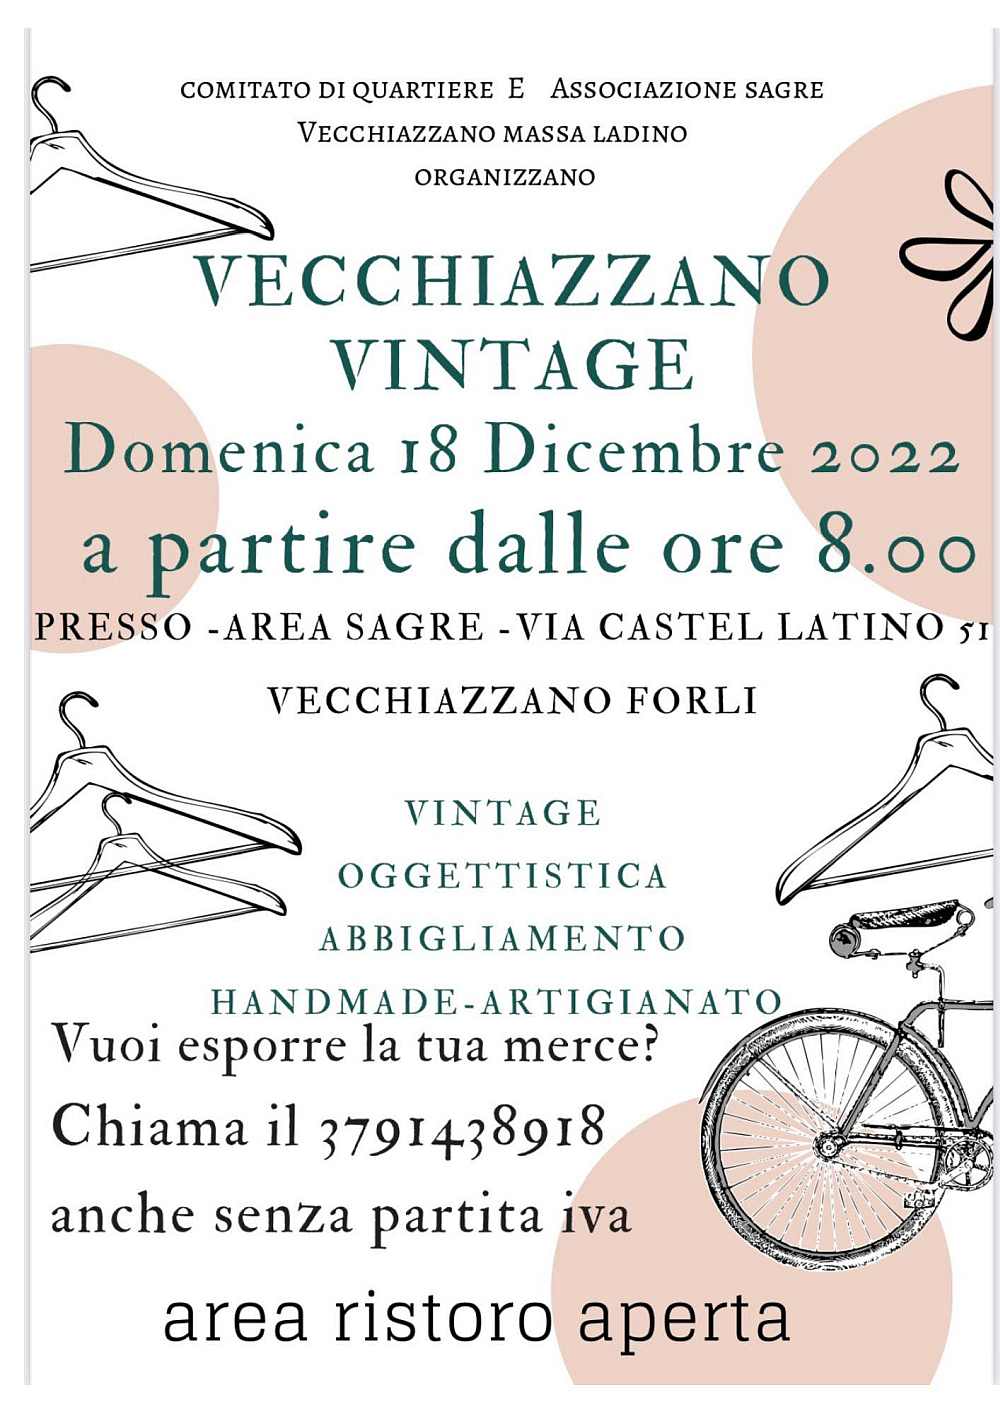 Forlì
"Vecchiazzano Vintage"
18 Dicembre 2022